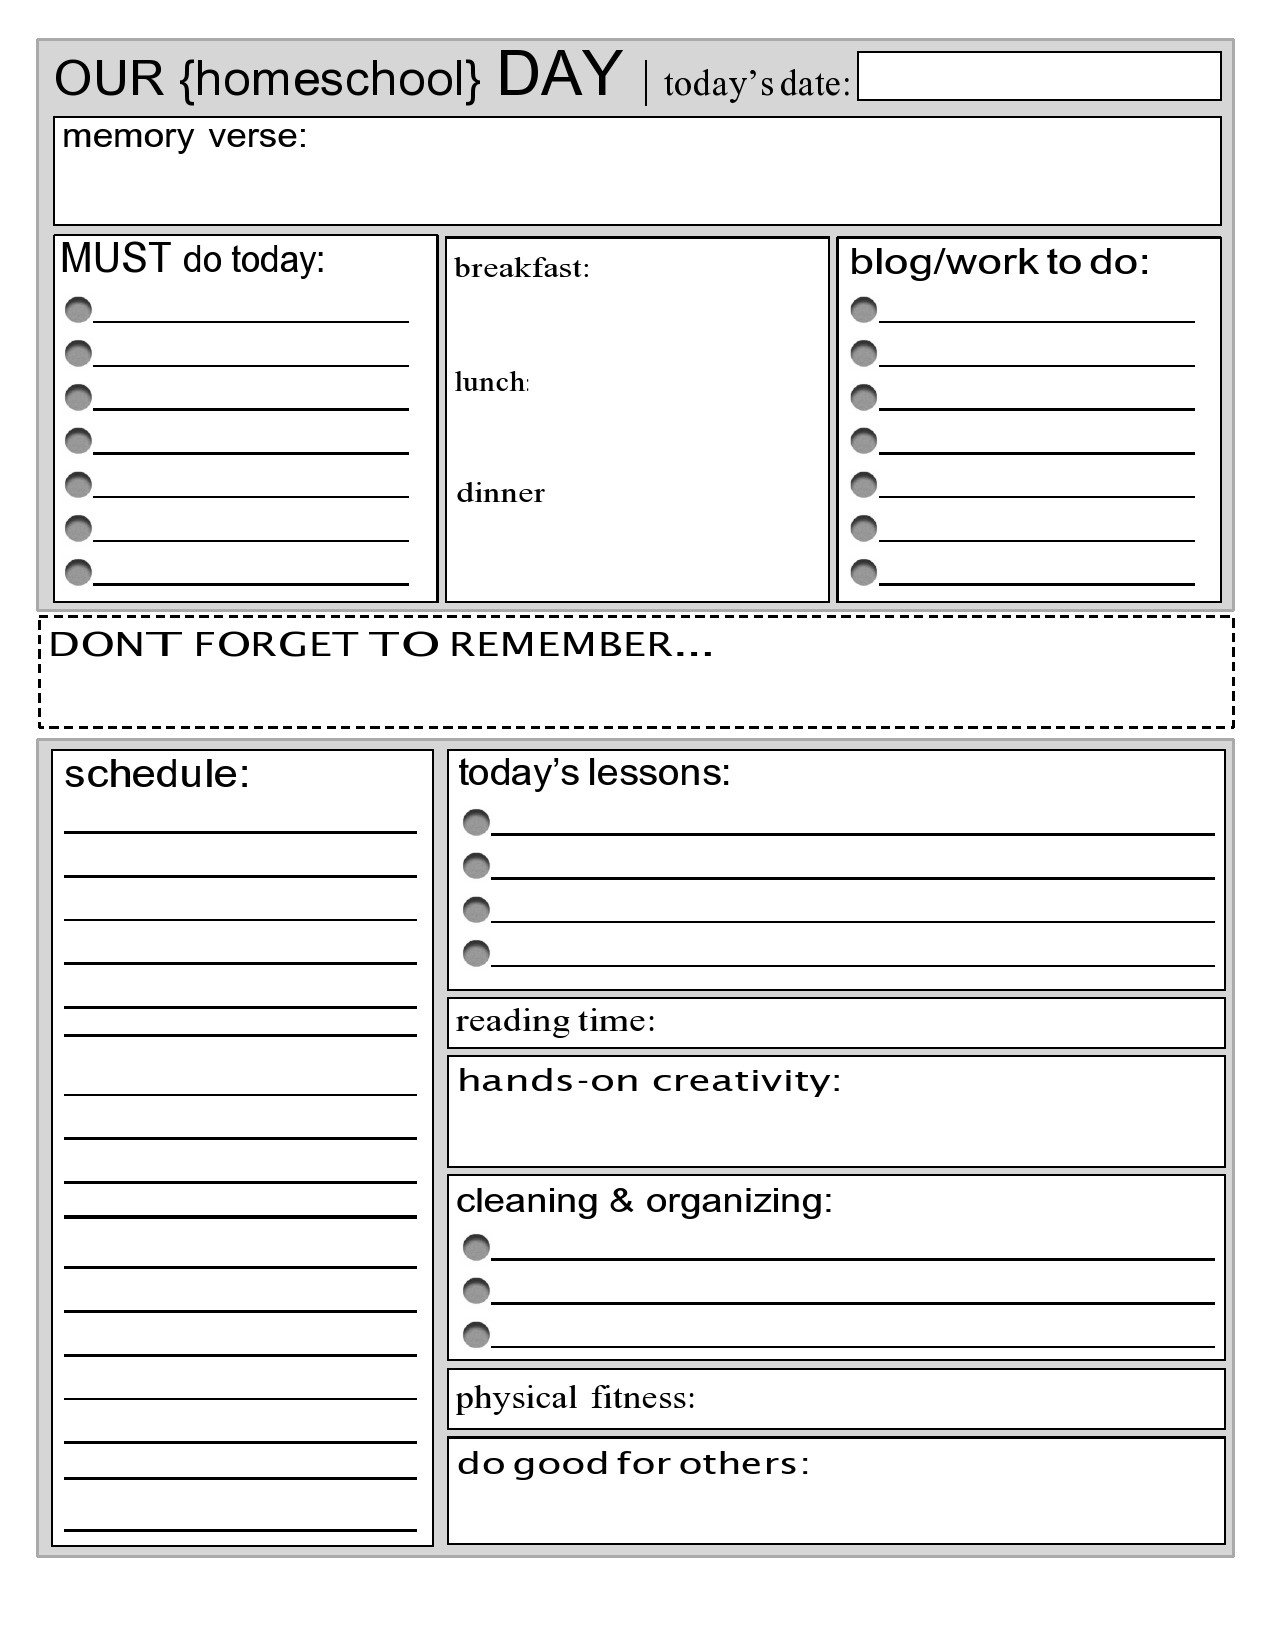 Free homeschool schedule template 11